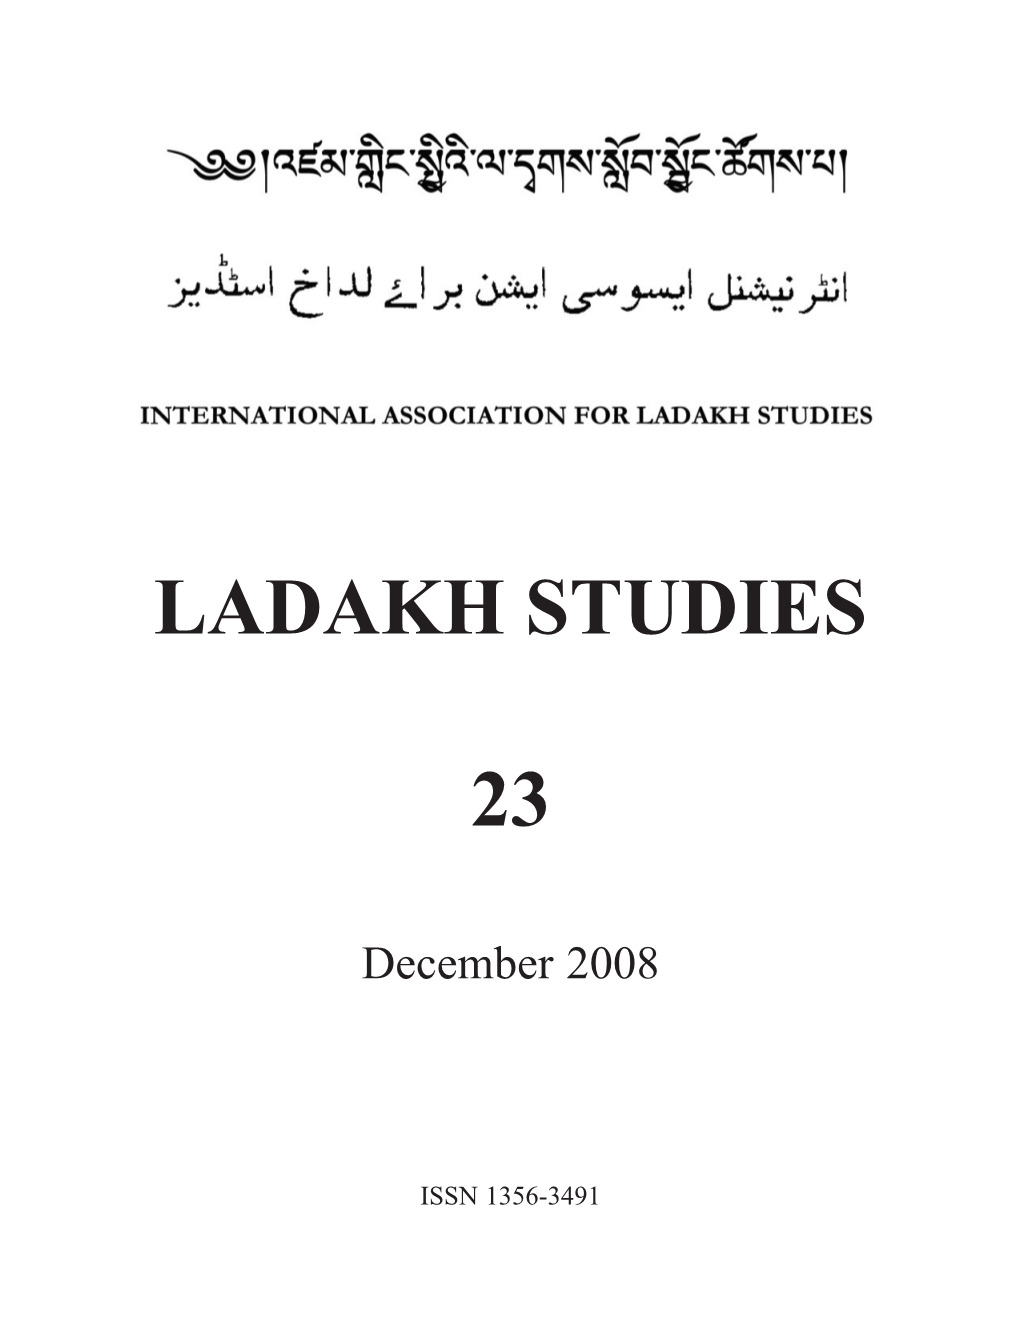 Ladakh Studies 23